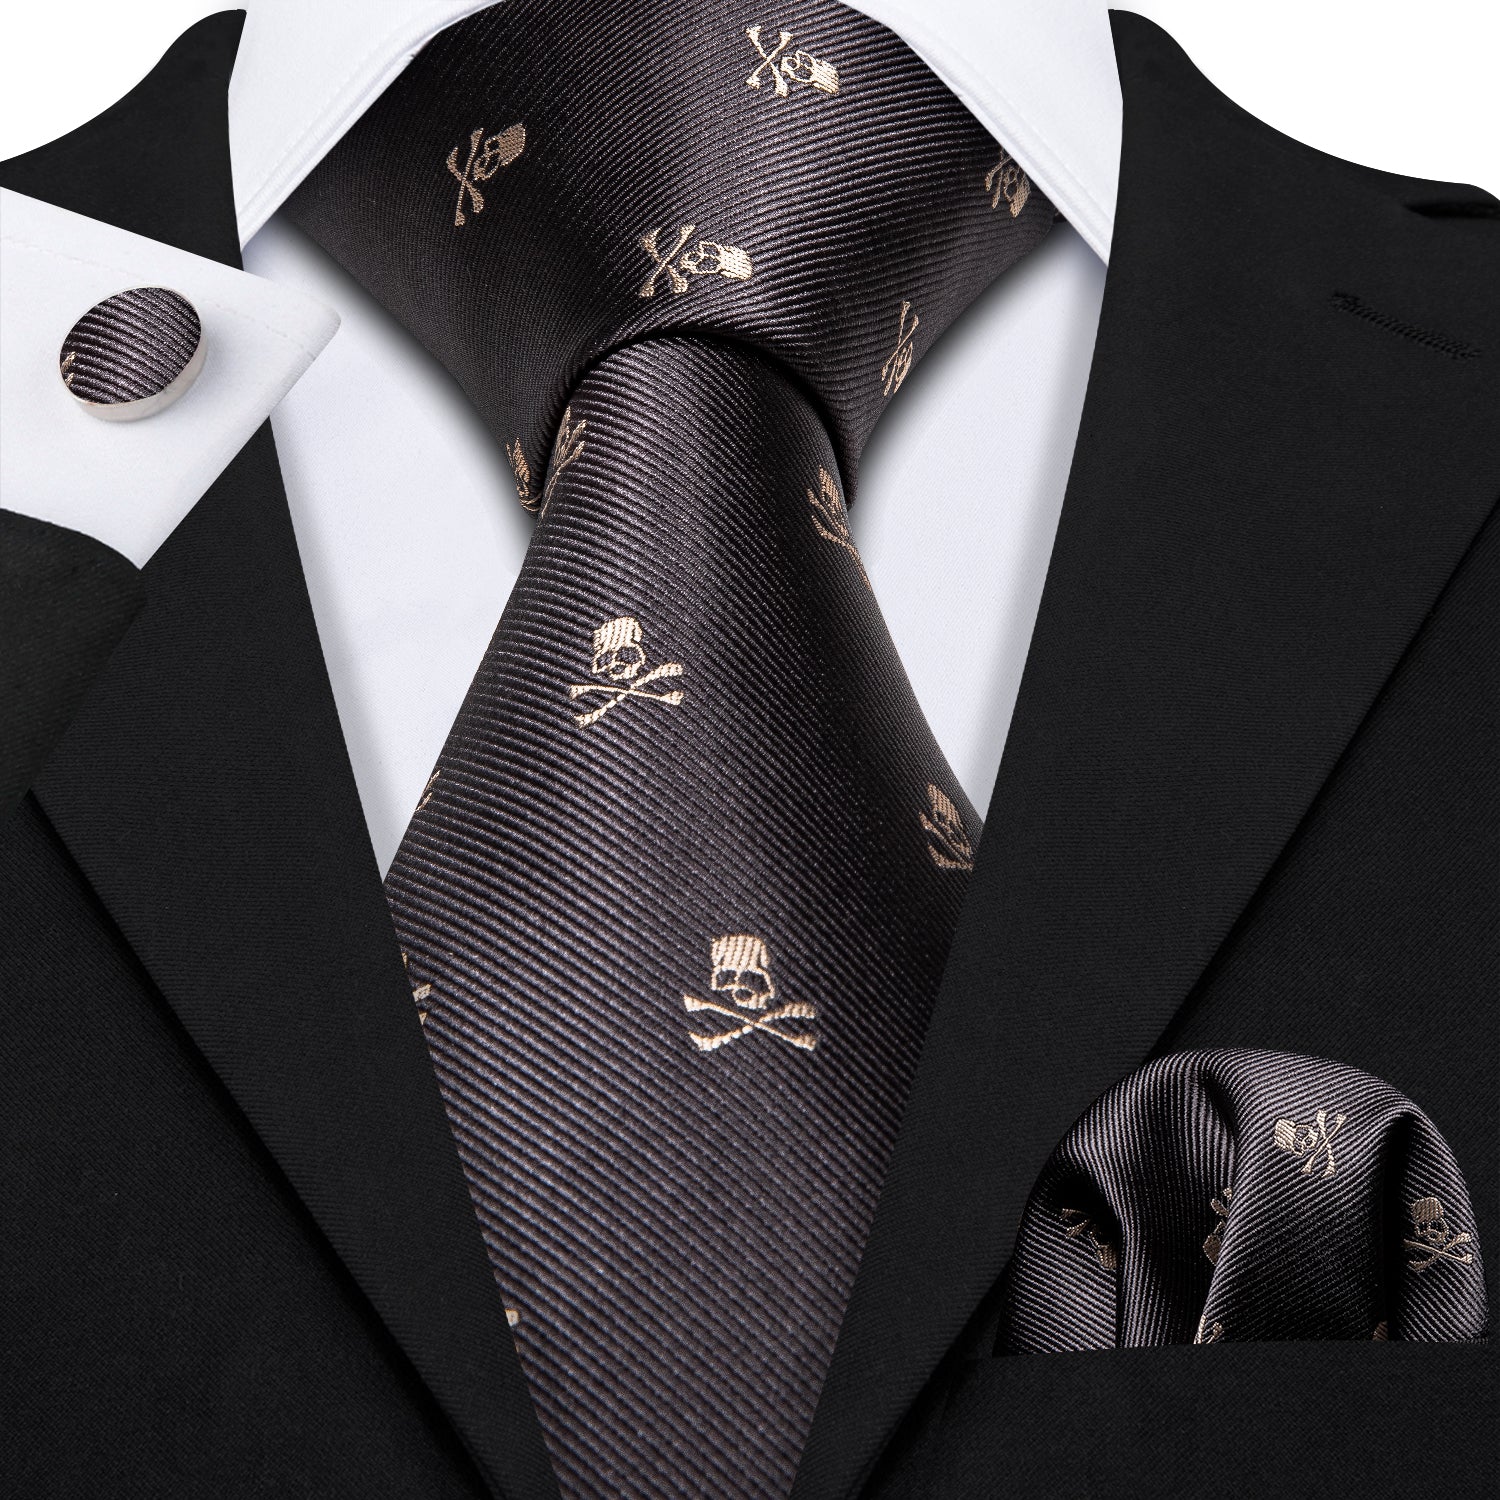 Ties2you Silk Tie Novelty Black Brown Skull Men's Tie Handkerchief Cufflinks Set